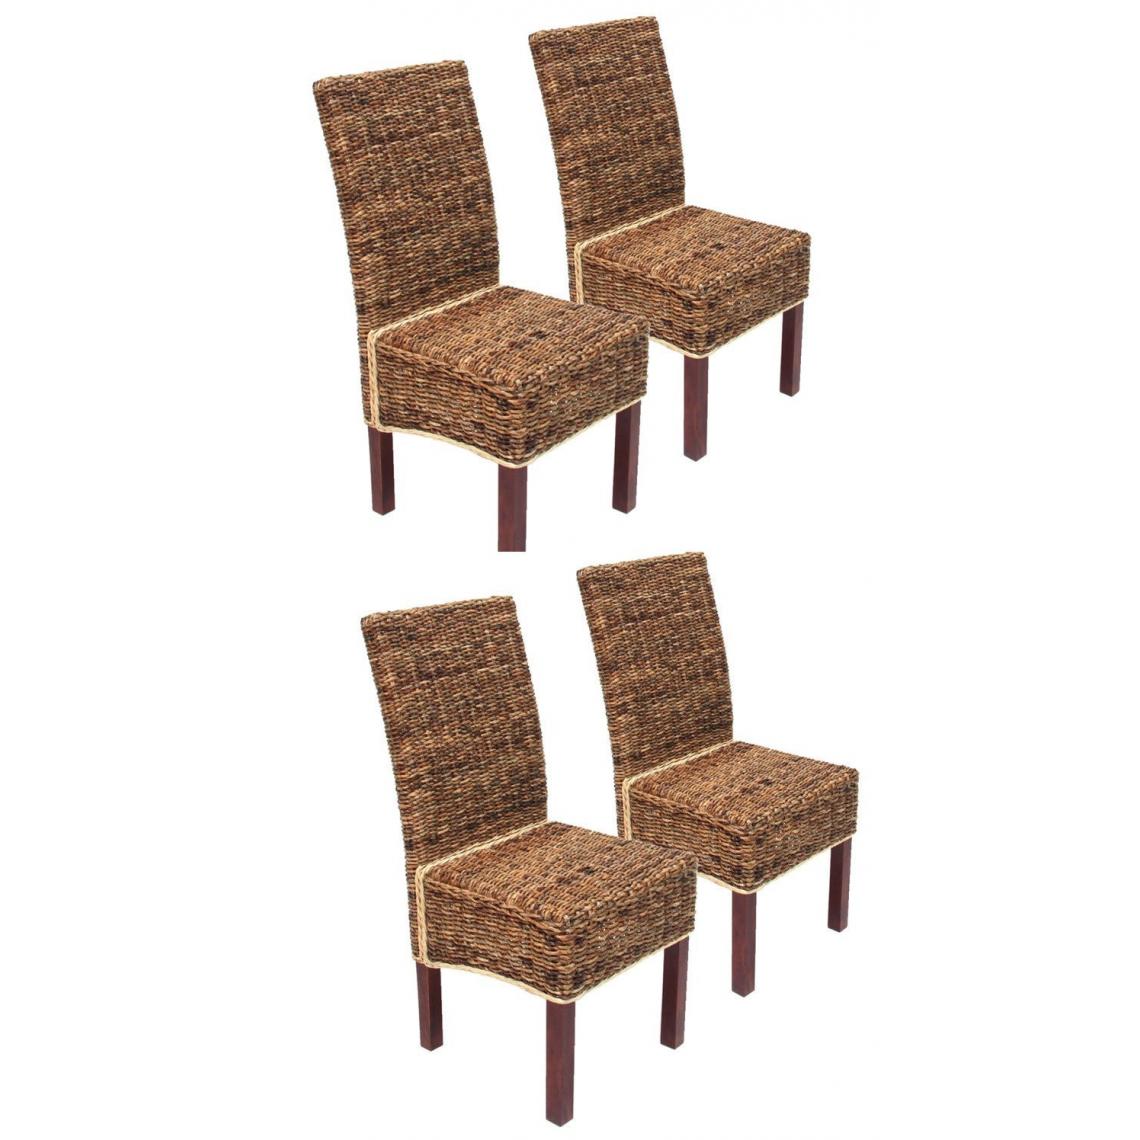 Decoshop26 - Lot de 4 chaises en rotin banane tressée pieds marron CDS04102 - Chaises